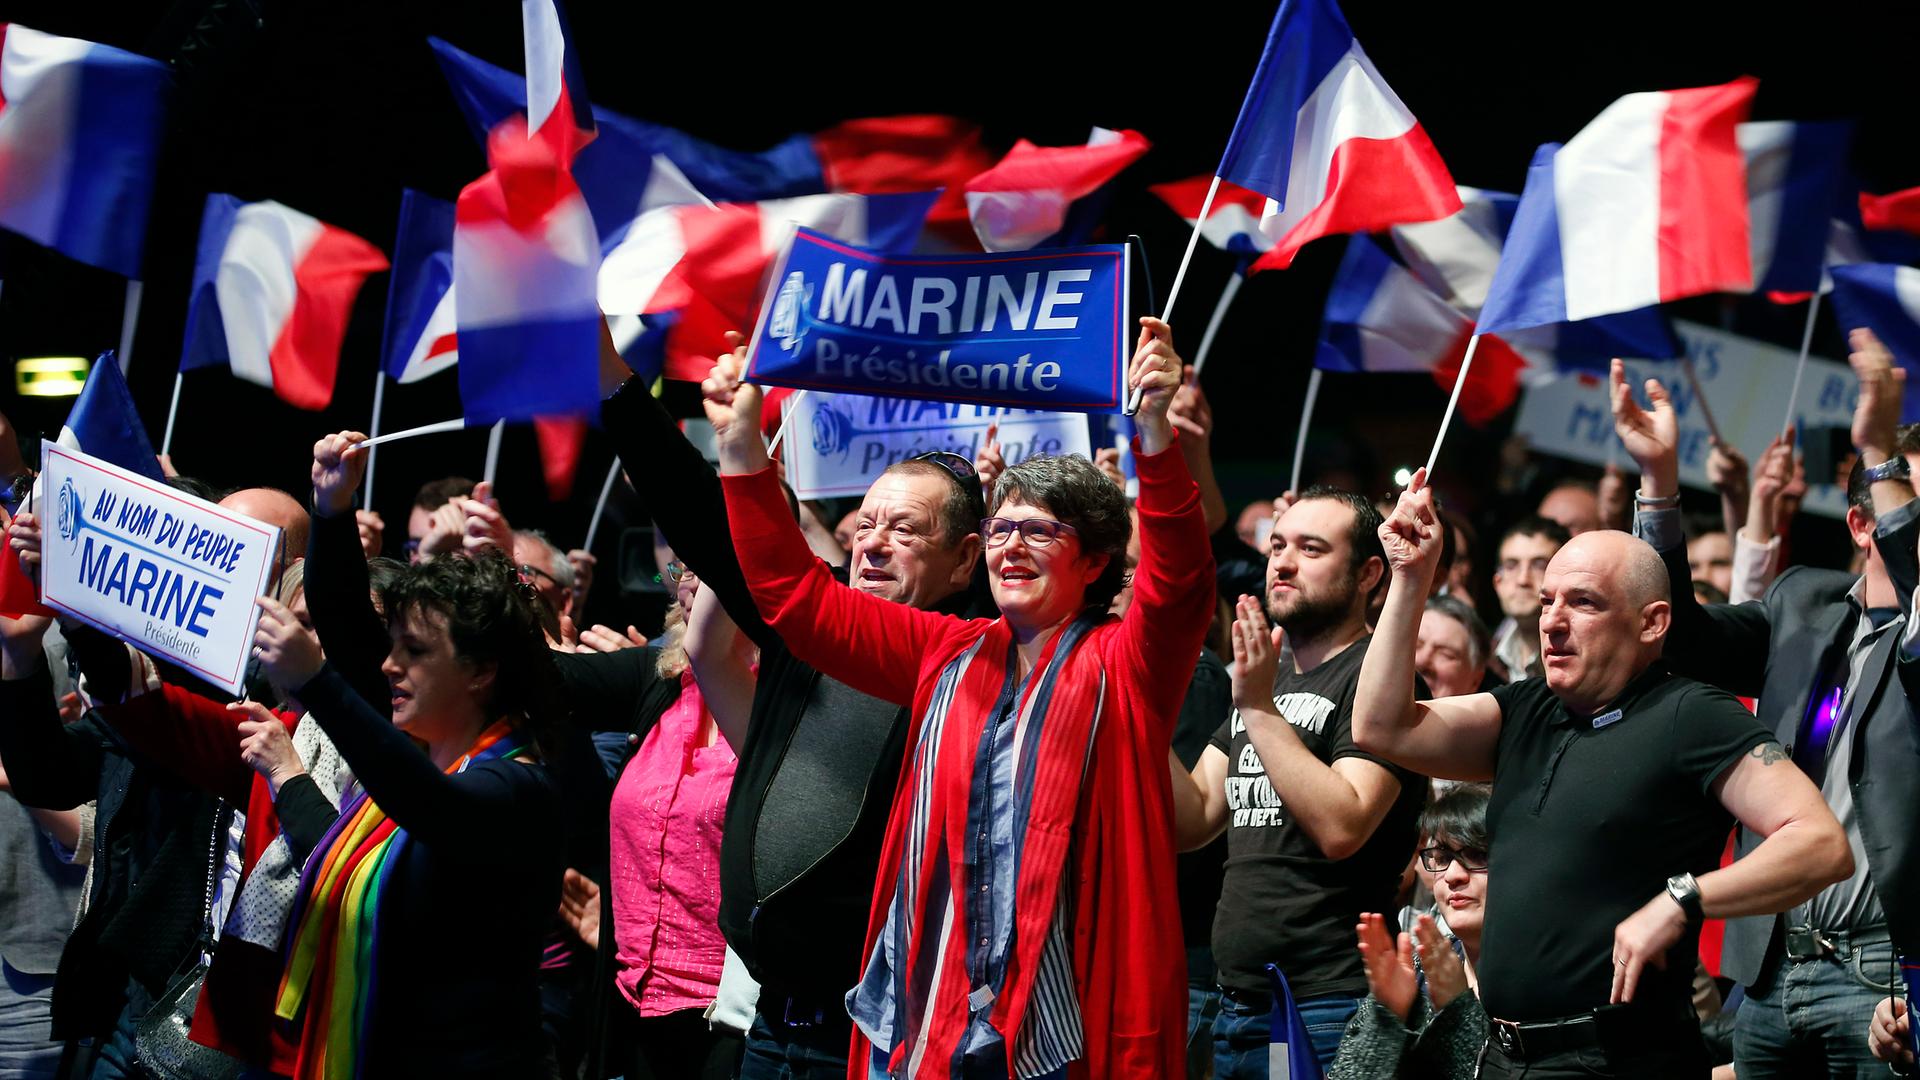 Anhänger des rechtsextremen Front National (FN) mit französischen Flaggen bei einer Wahlkampfveranstaltung von Marine Le Pen in Chateauroux im Department Indre für die französischen Präsidentschaftswahlen 2017.